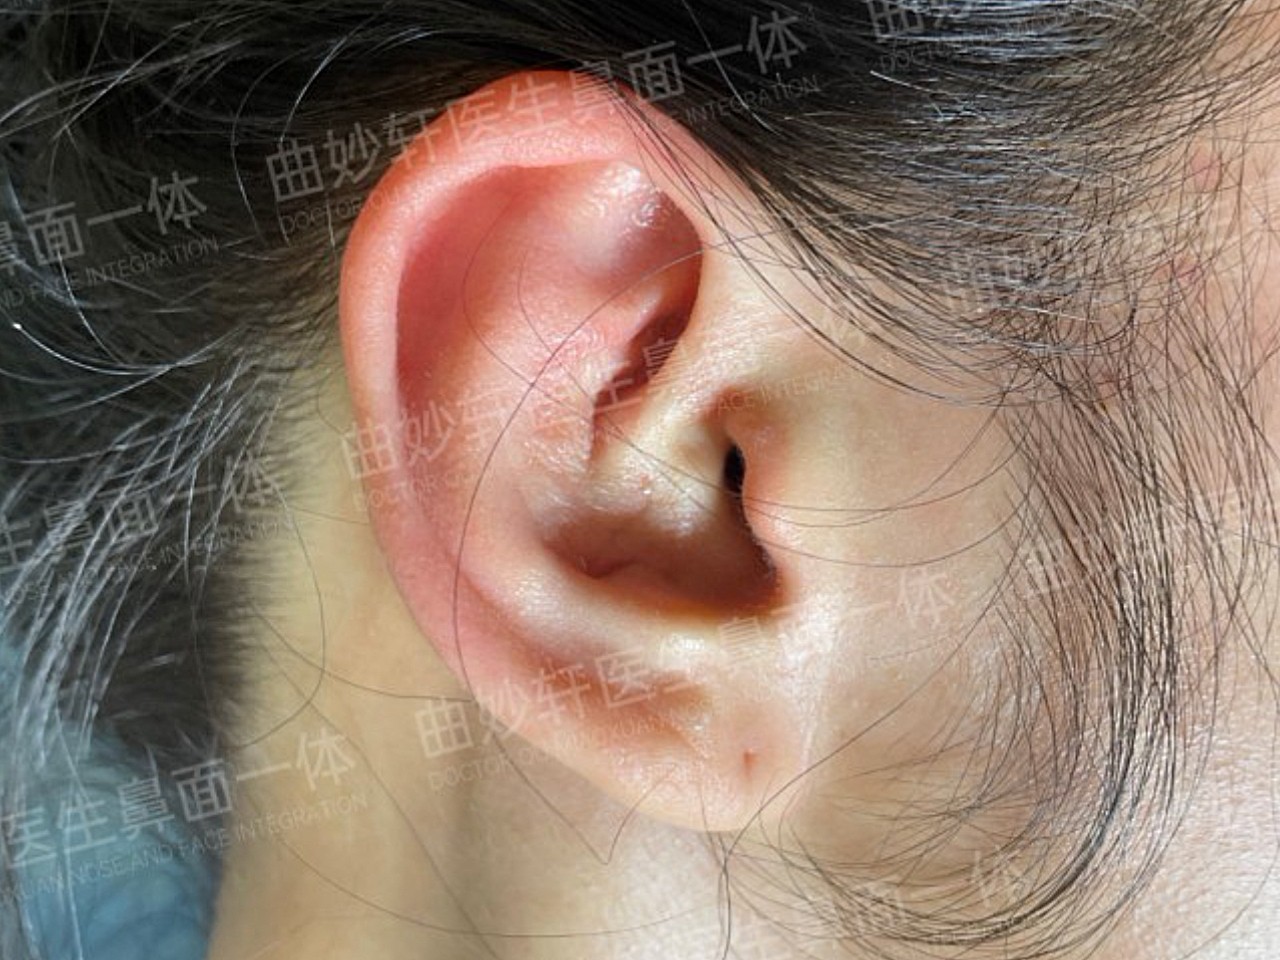 取耳软骨设计在耳后比较隐蔽,疤痕社交距离看不见,仔细拉起耳朵看,能